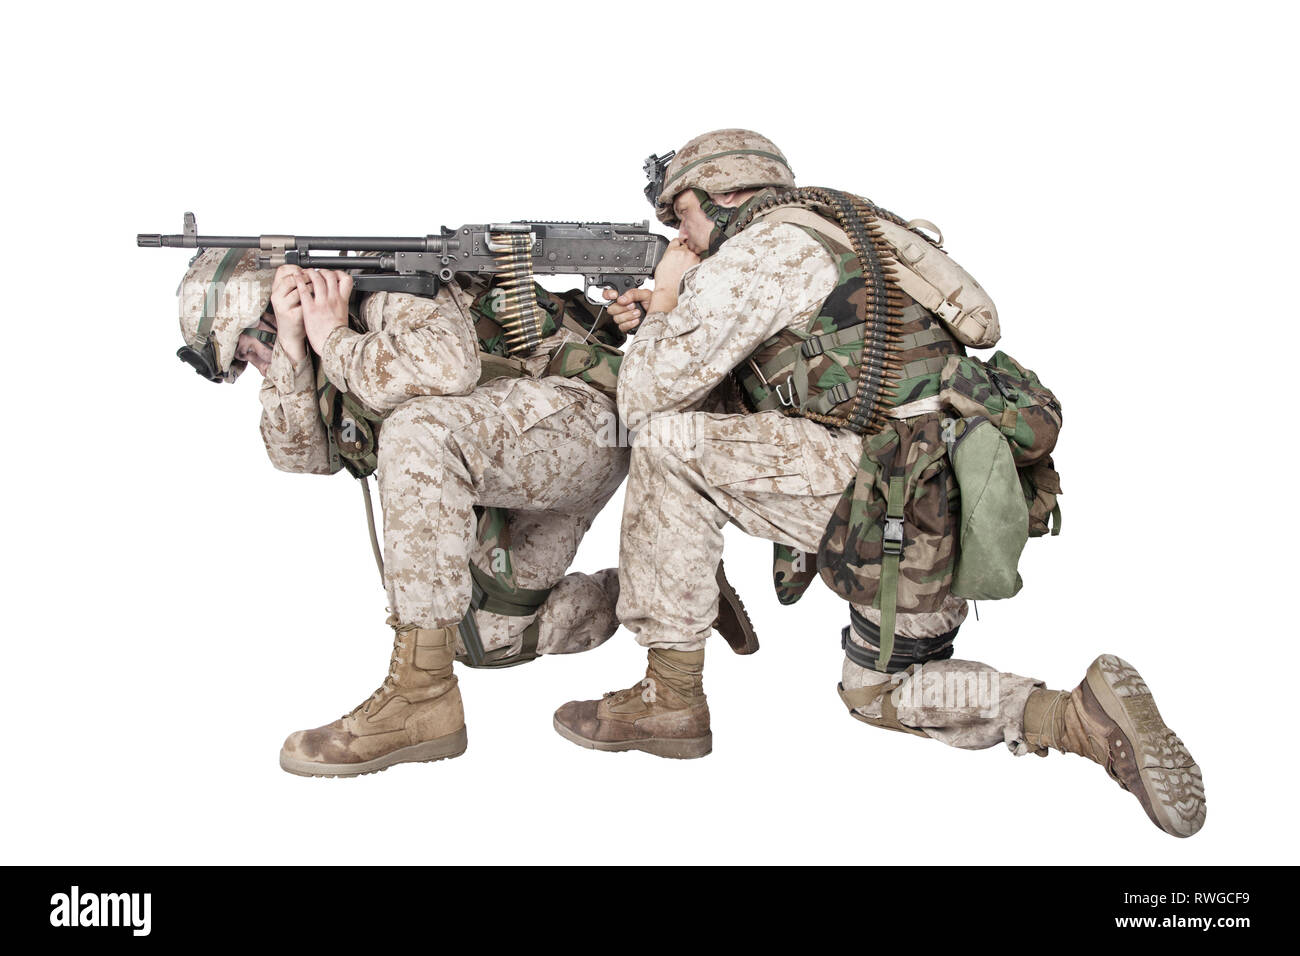 Soldado poniendo ametralladora en la espalda del compañero y disparar al enemigo. Foto de stock